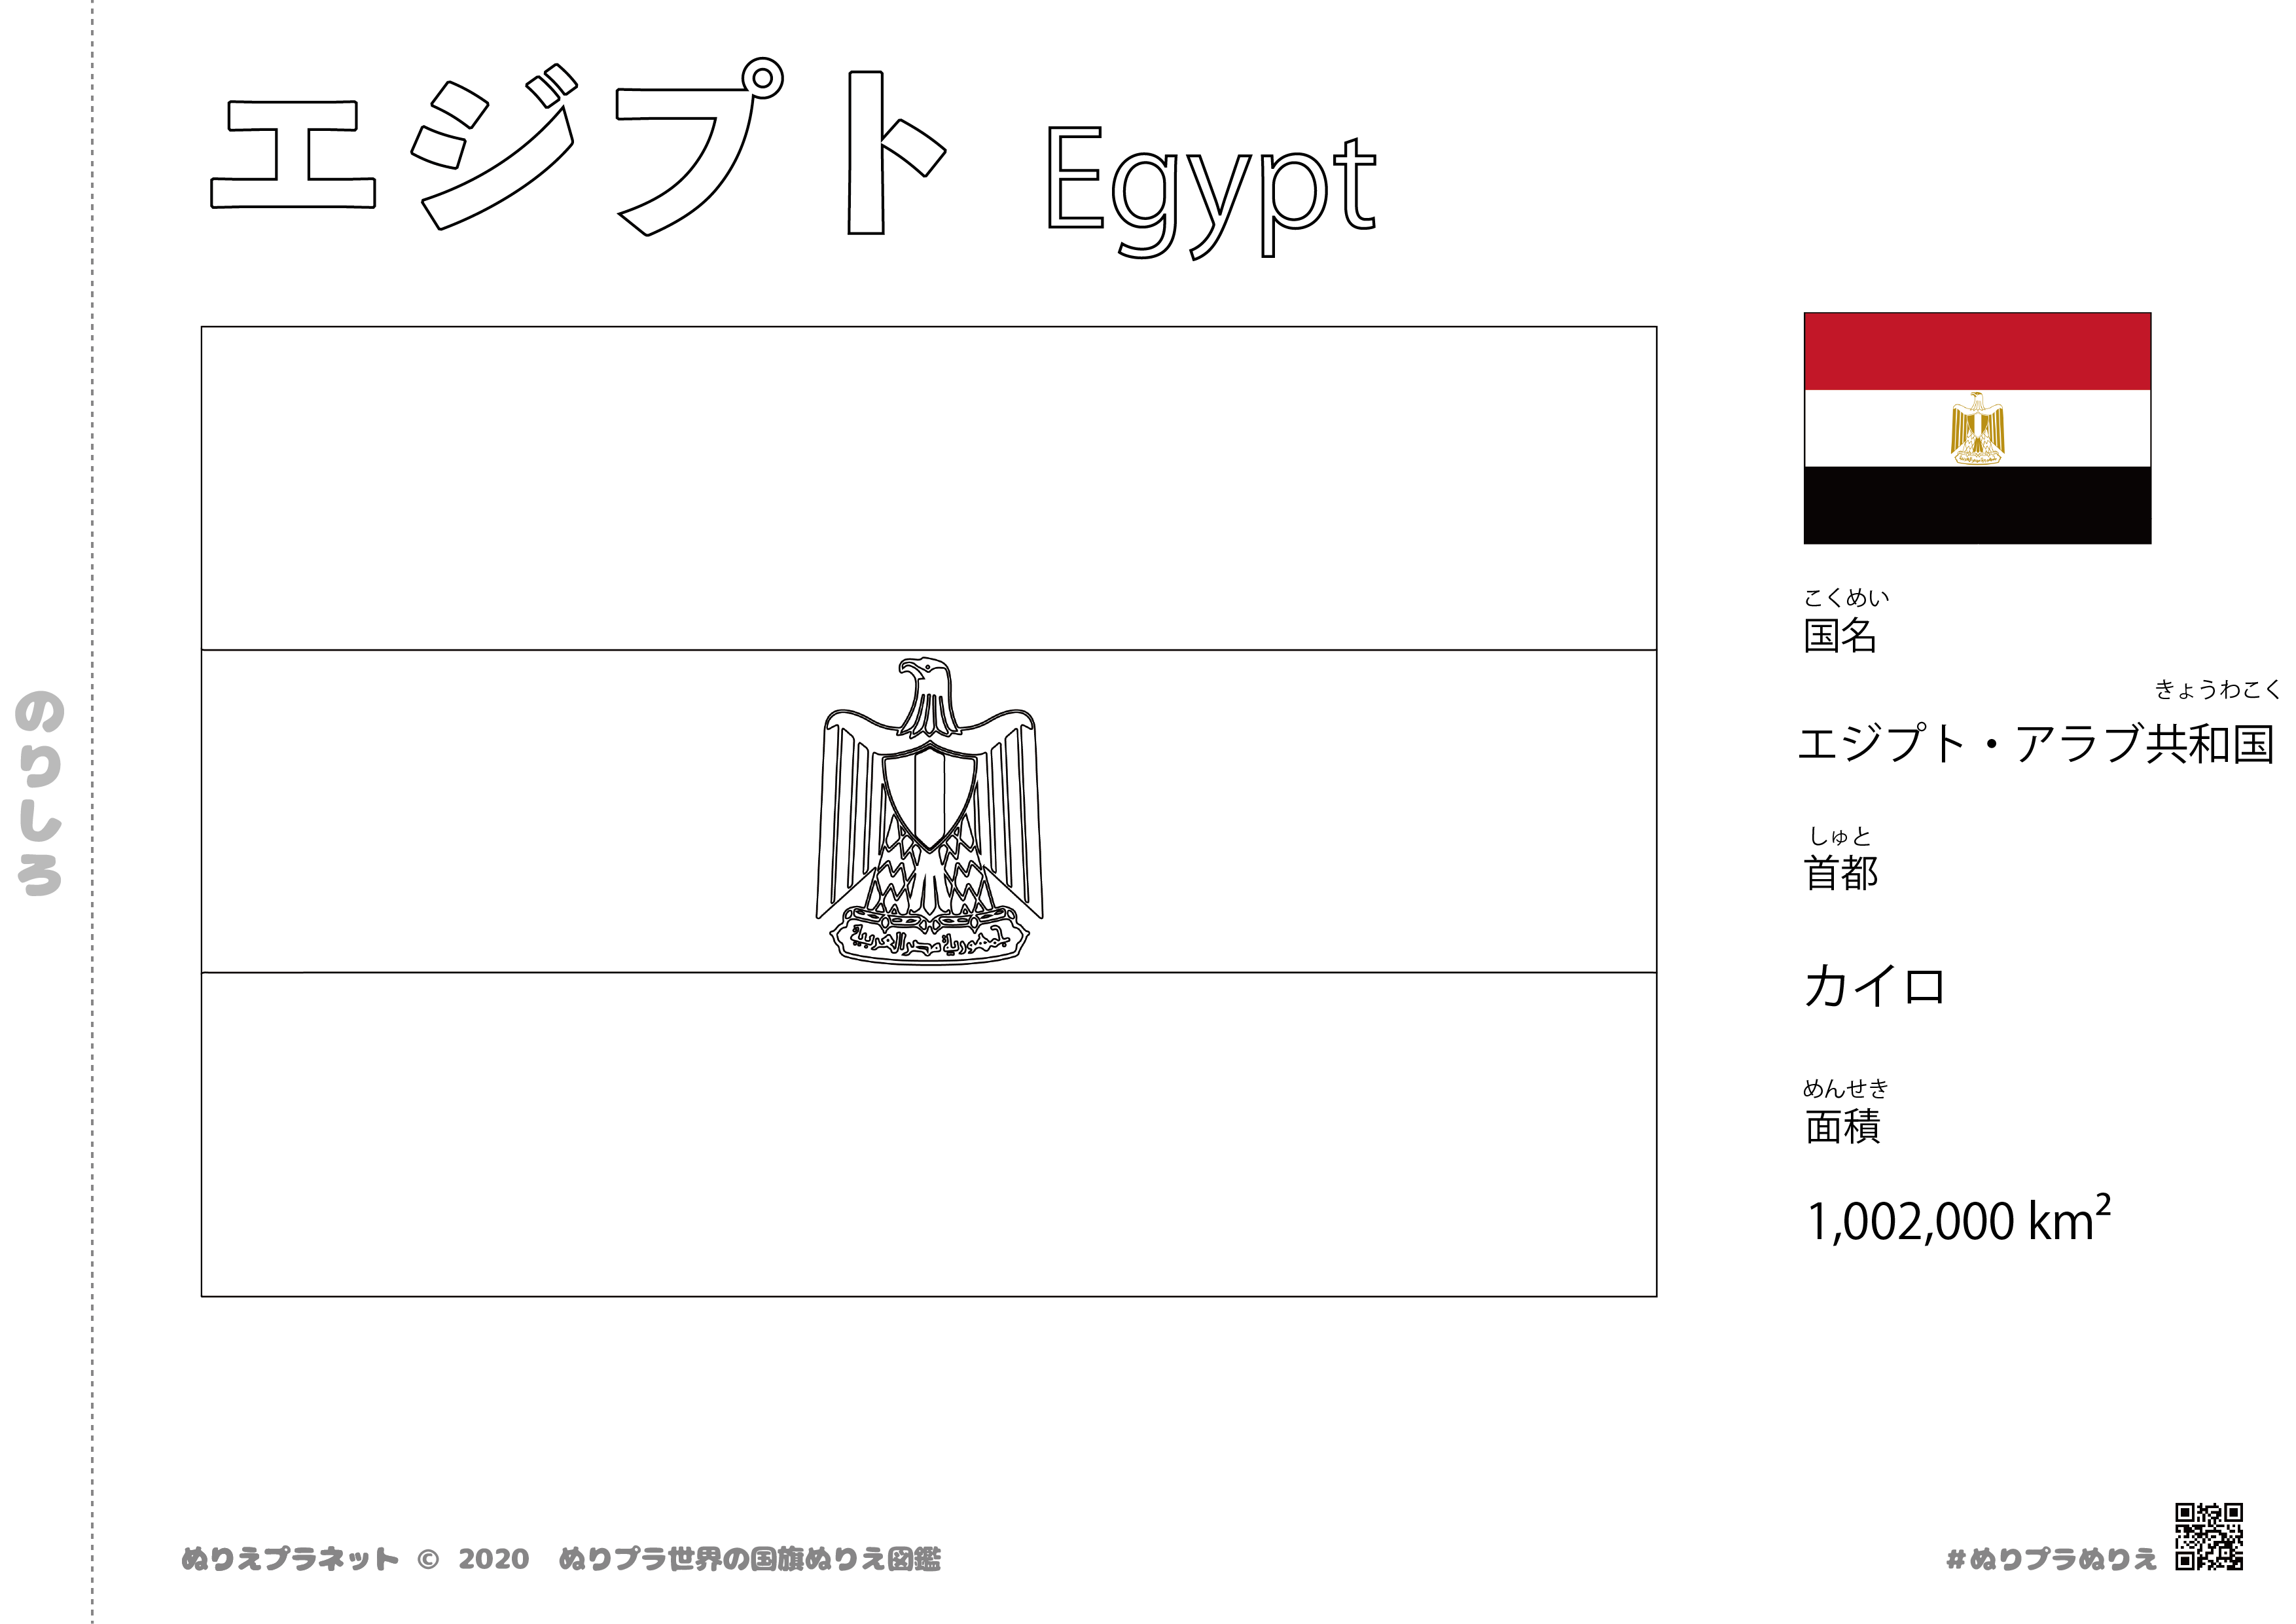 エジプトの国旗塗り絵です。国名、首都、面積も覚えられます。